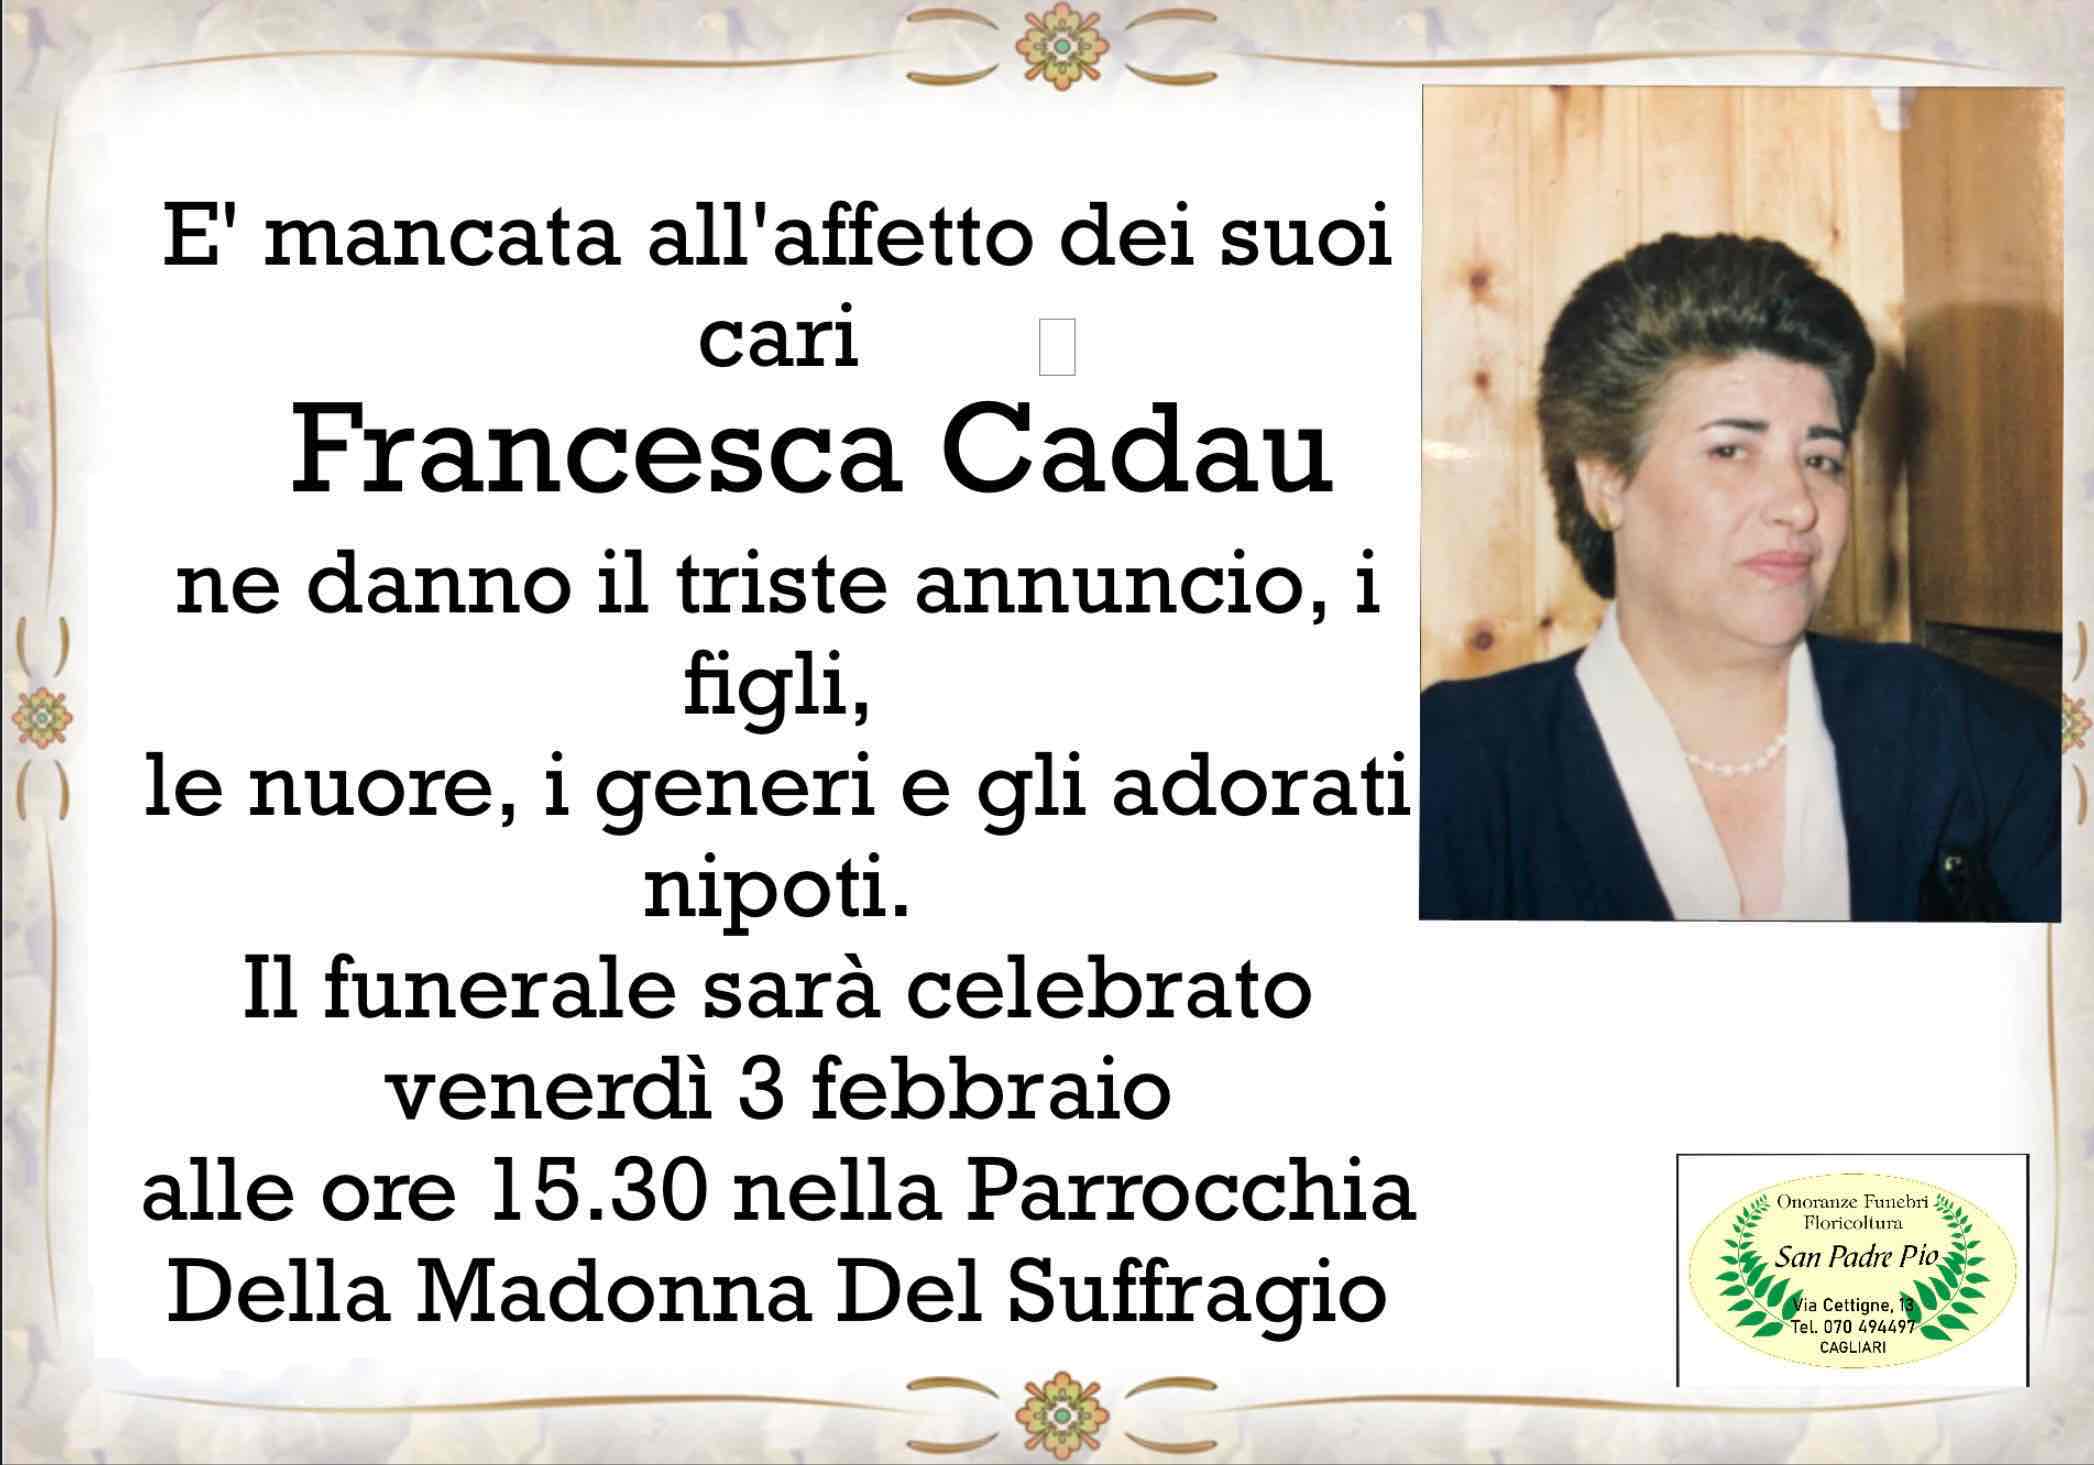 Francesca Cadau